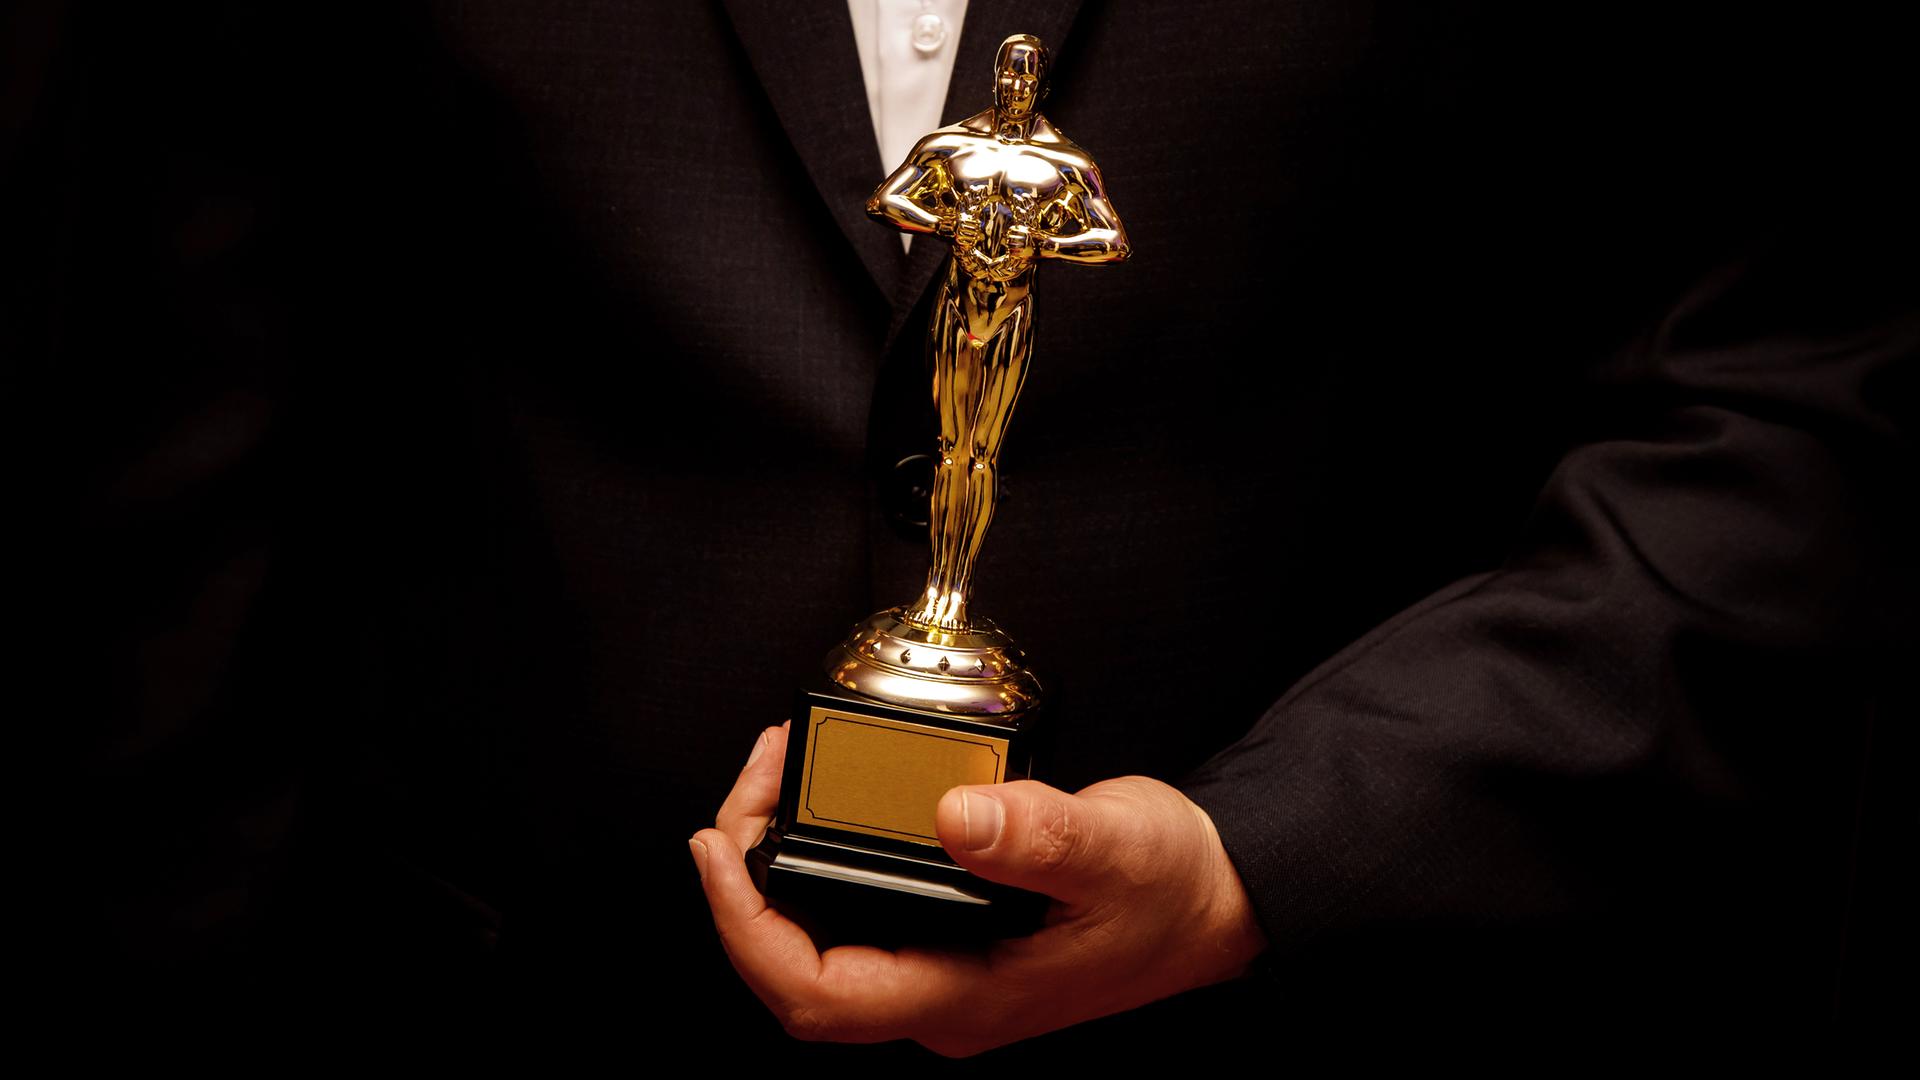 Eine goldene Oscarstatue in der Hand von einem Menschen im schwarzen Anzug und weissem Hemd.